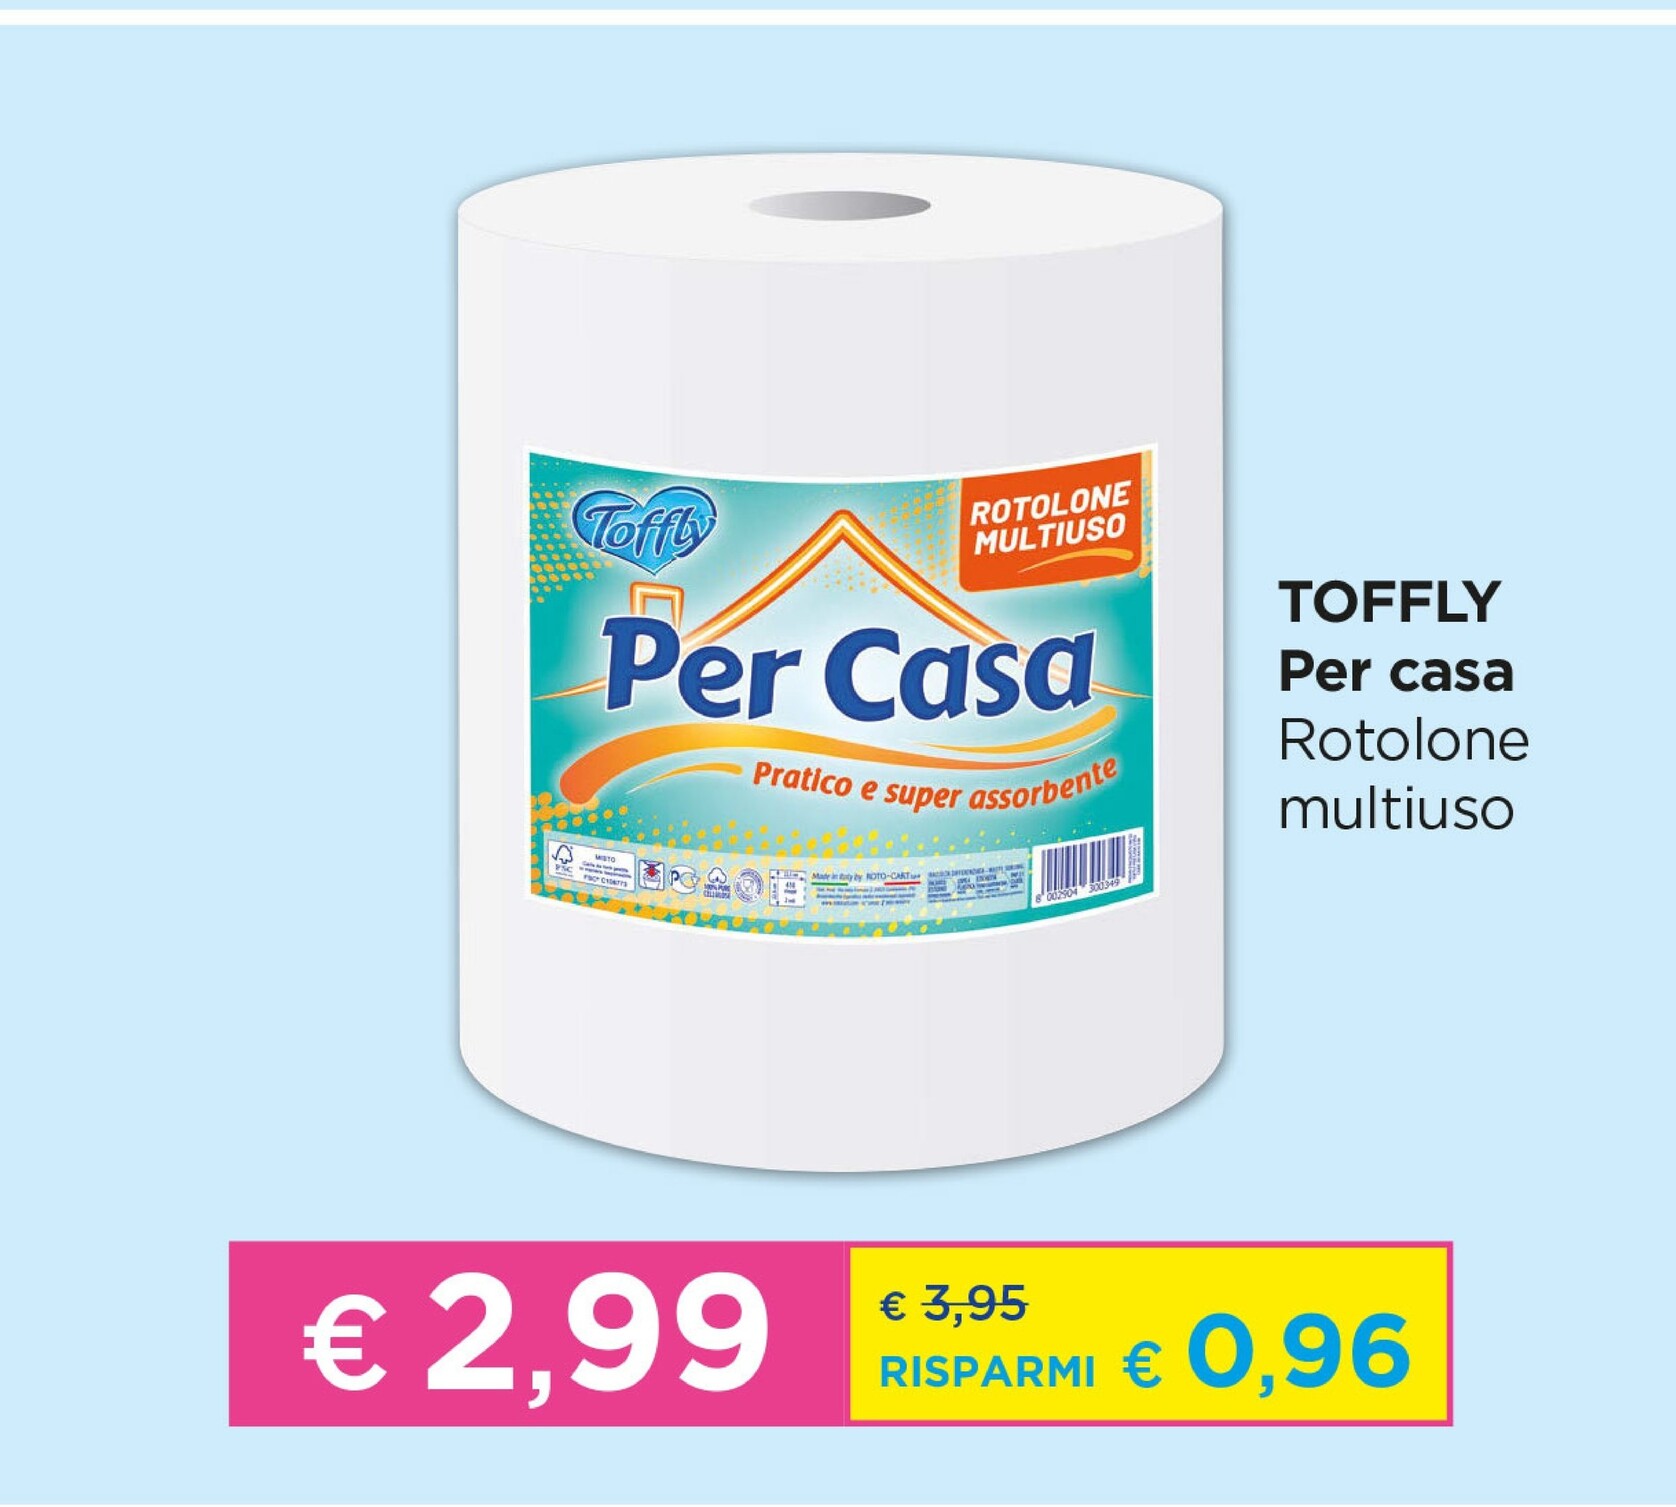 Offerta per Toffly Per Casa Rotolone Multiuso a 2,99€ in Acqua & Sapone